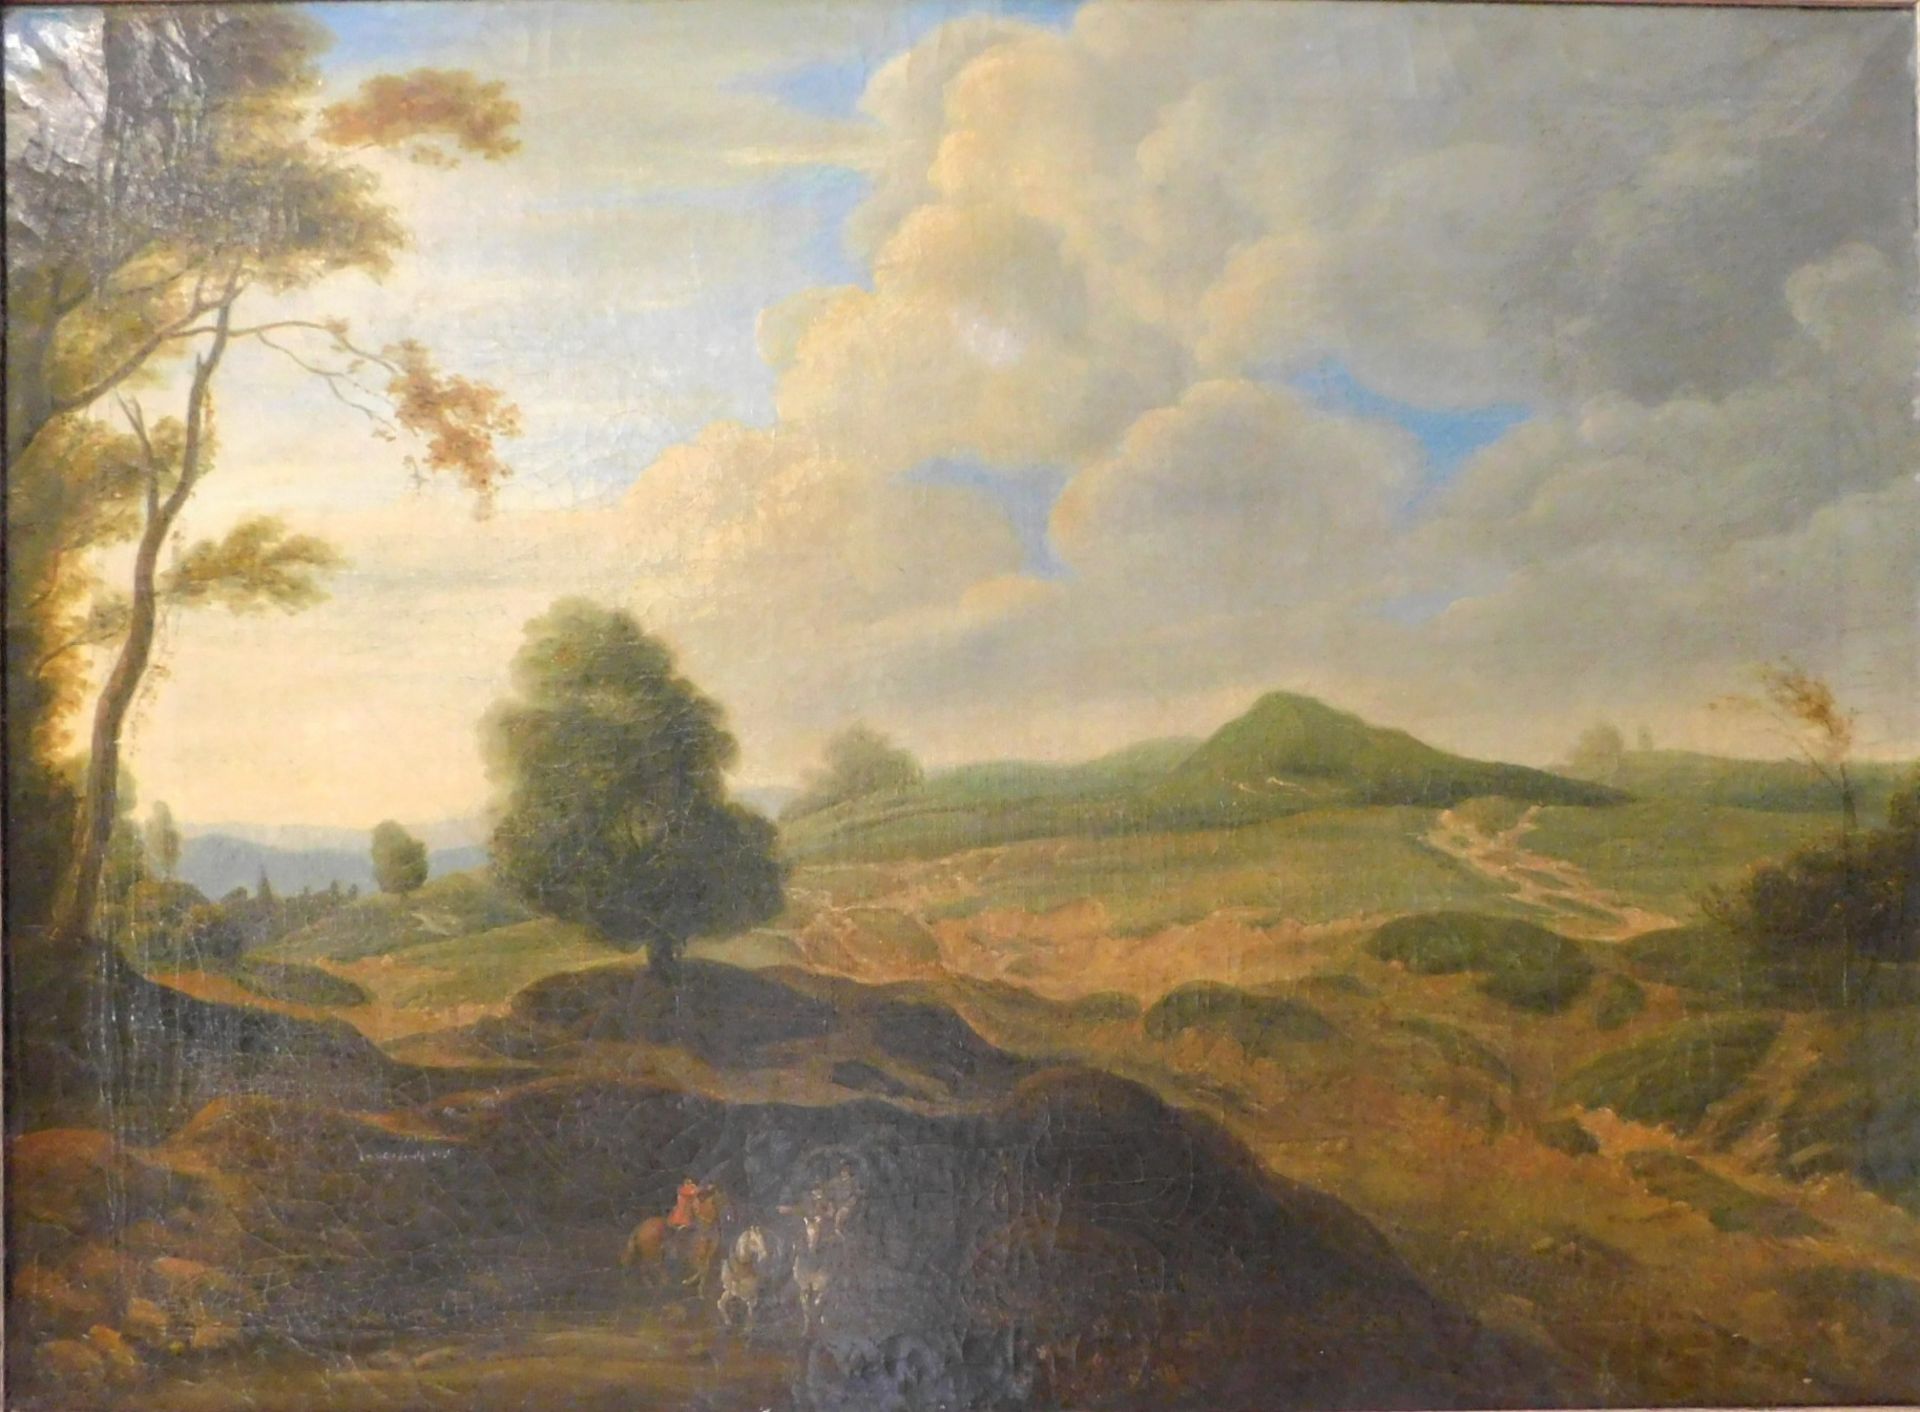 Lodewyck de Vadder (*1605-1655) "Landschaft mit Personen" Ö/Leinwand, 57 x 77 cm